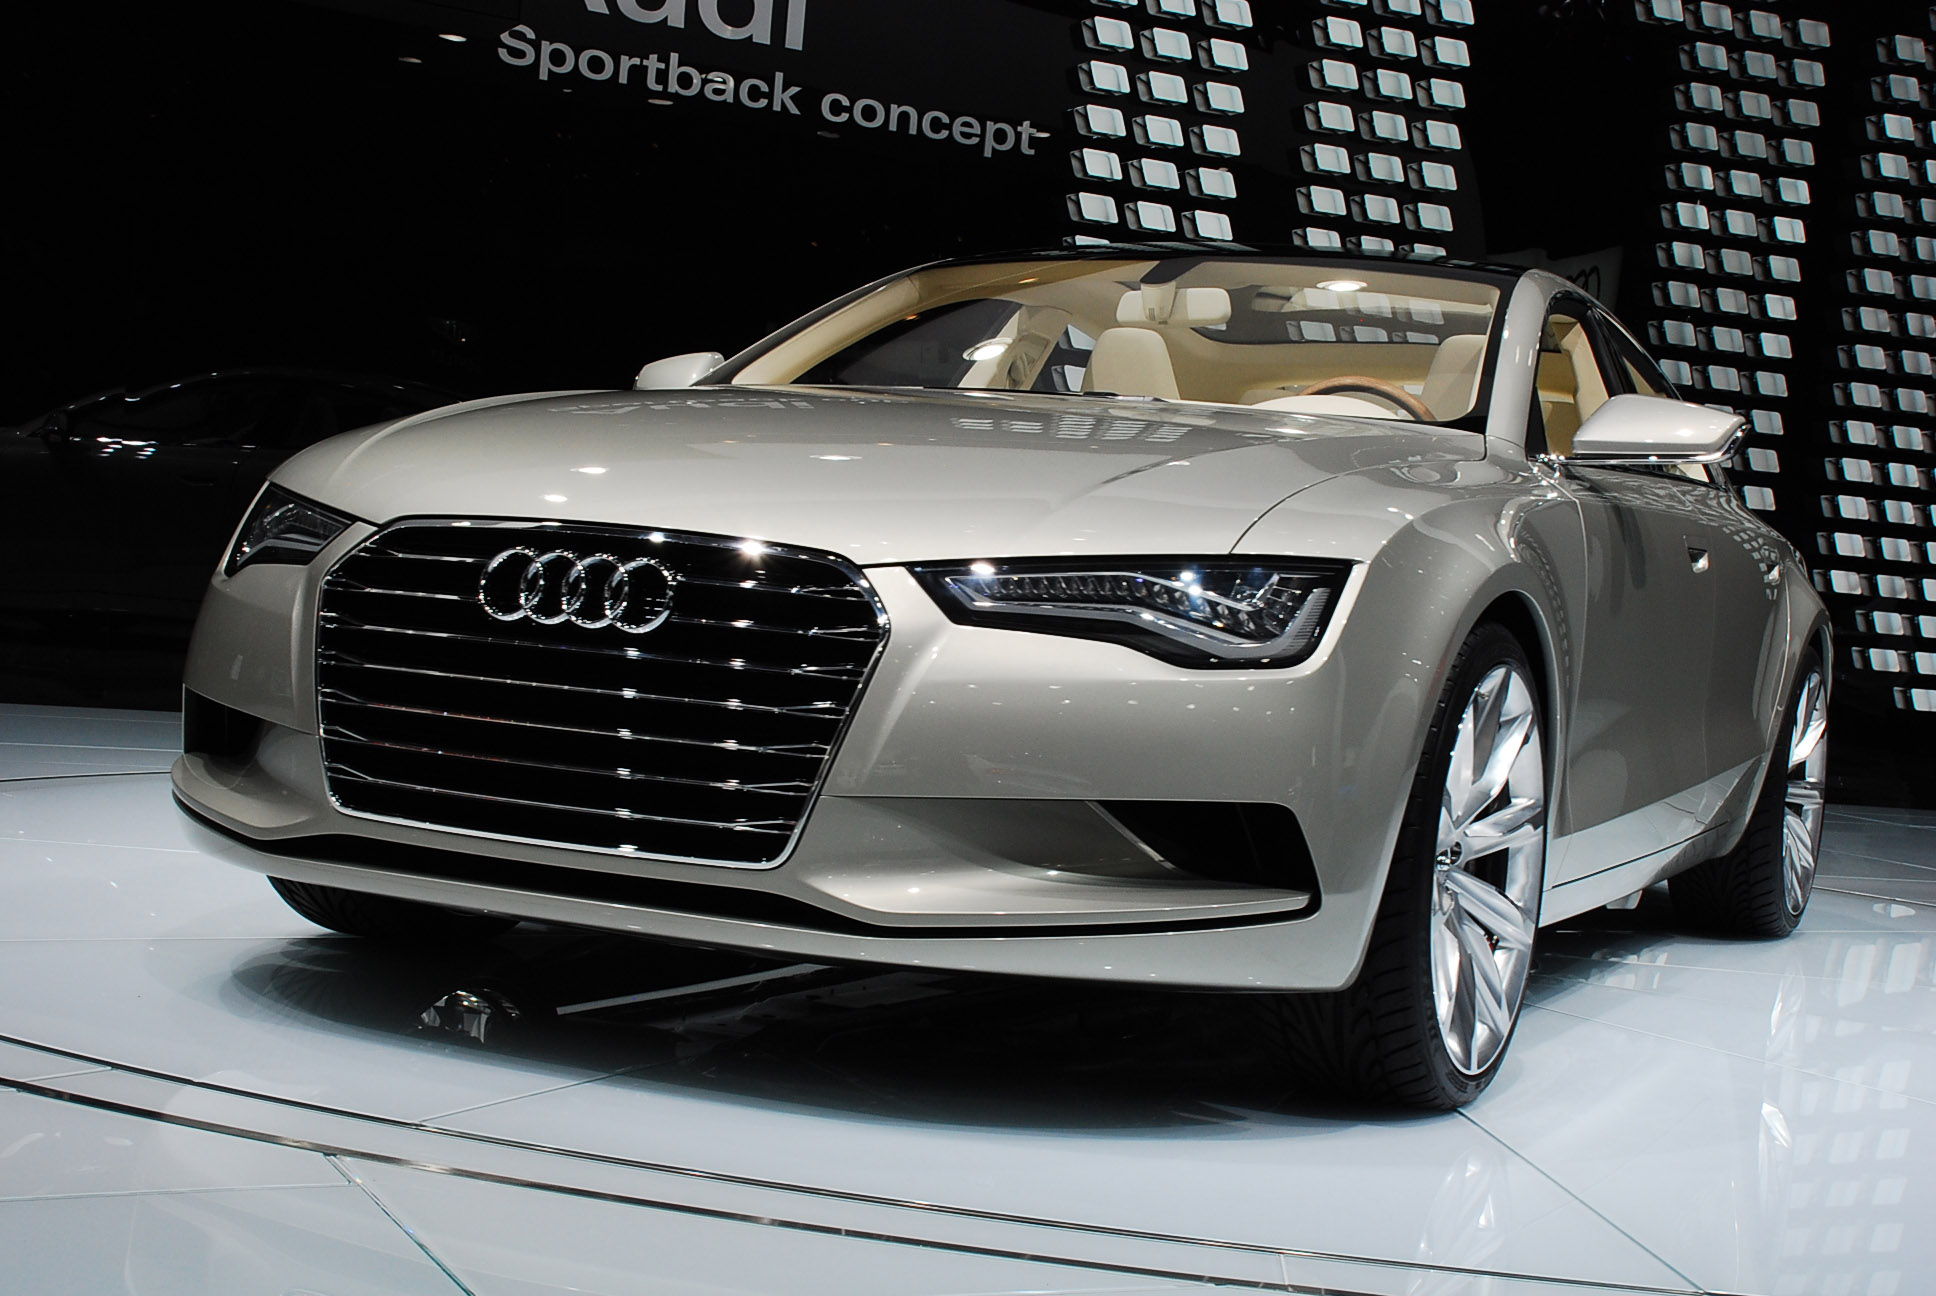 Audi Sportback Concept Detroit